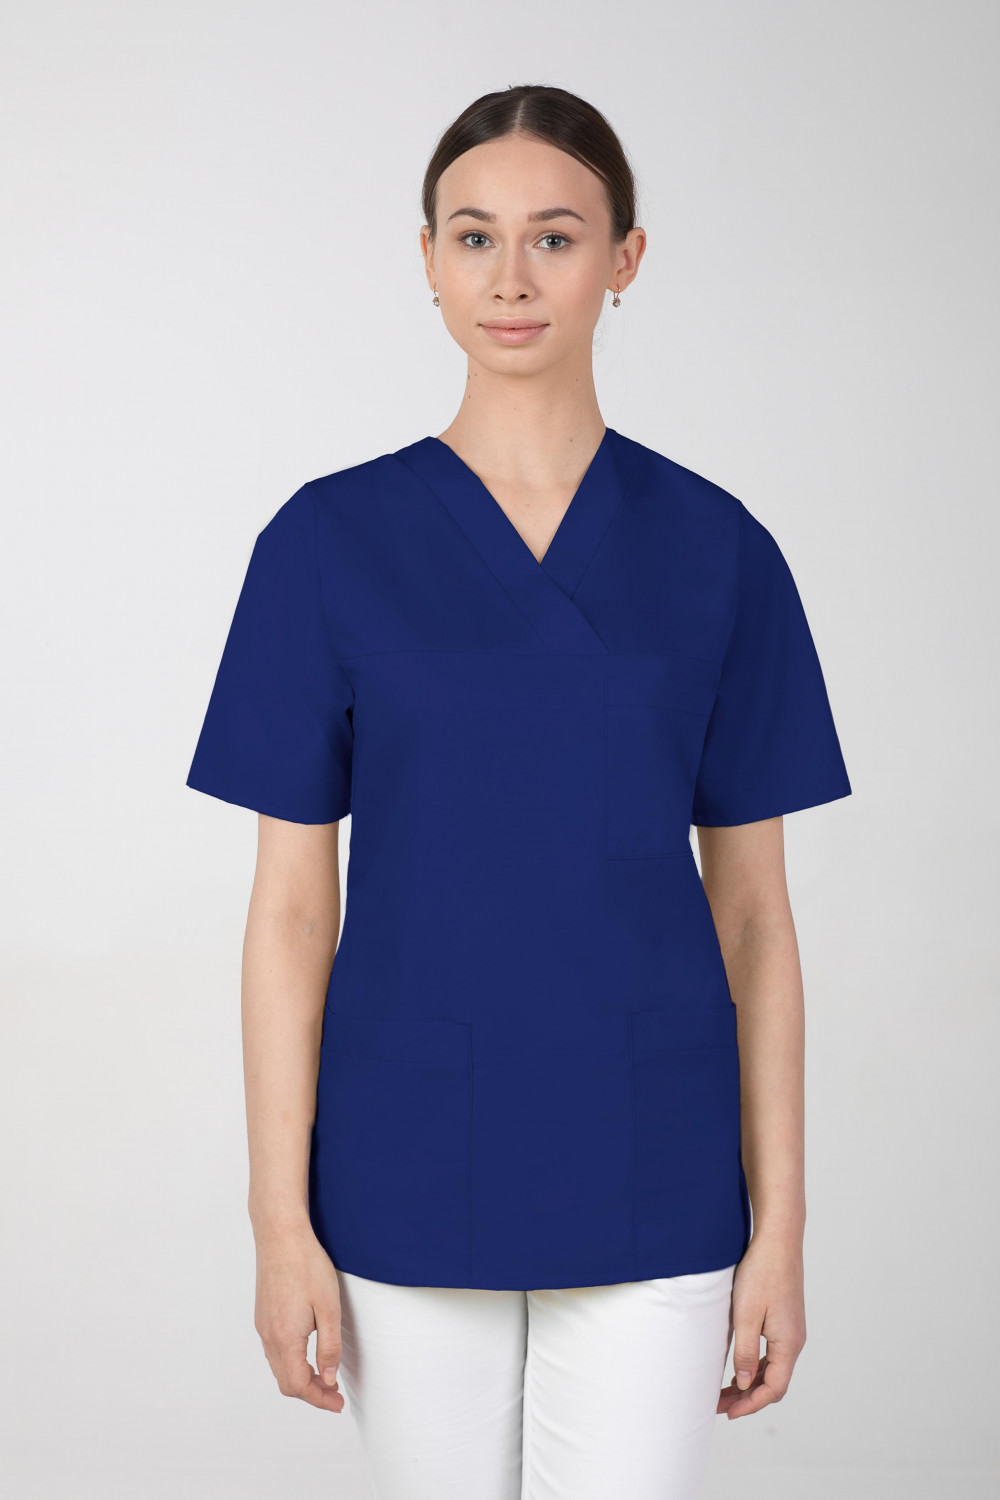 M-074 Bluza damska medyczna fartuch kosmetyczny  kolor szafir